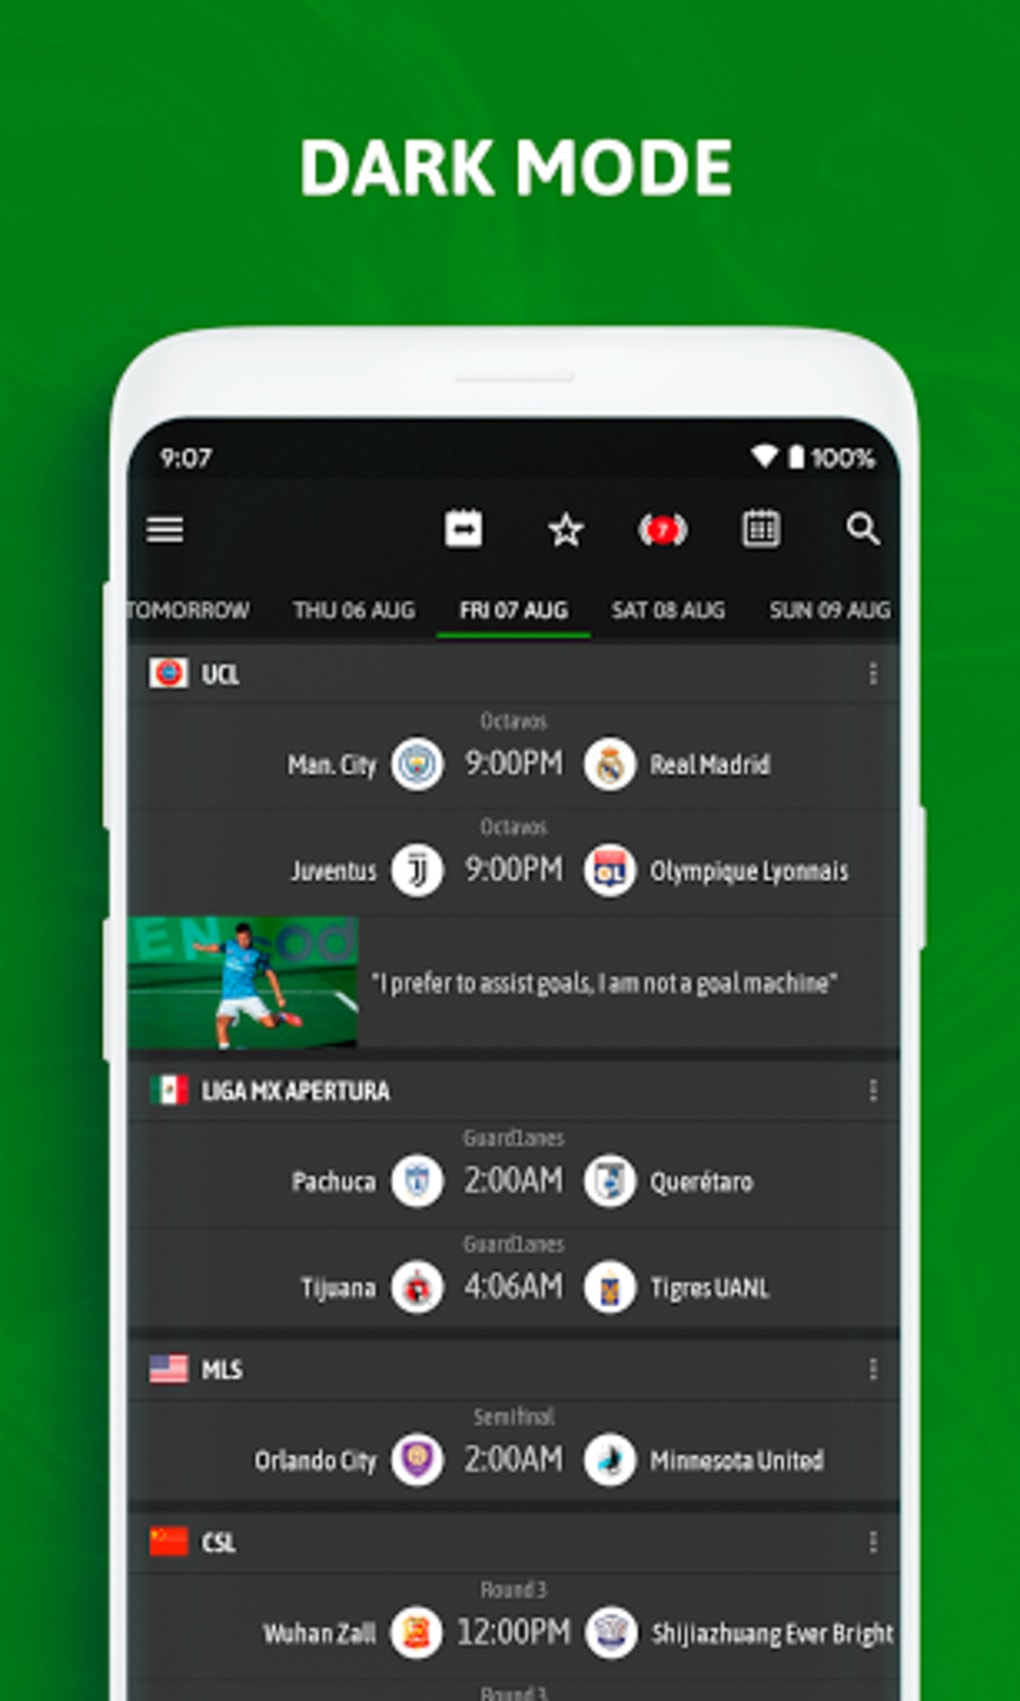 BeSoccer - Resultados futebol – Apps no Google Play